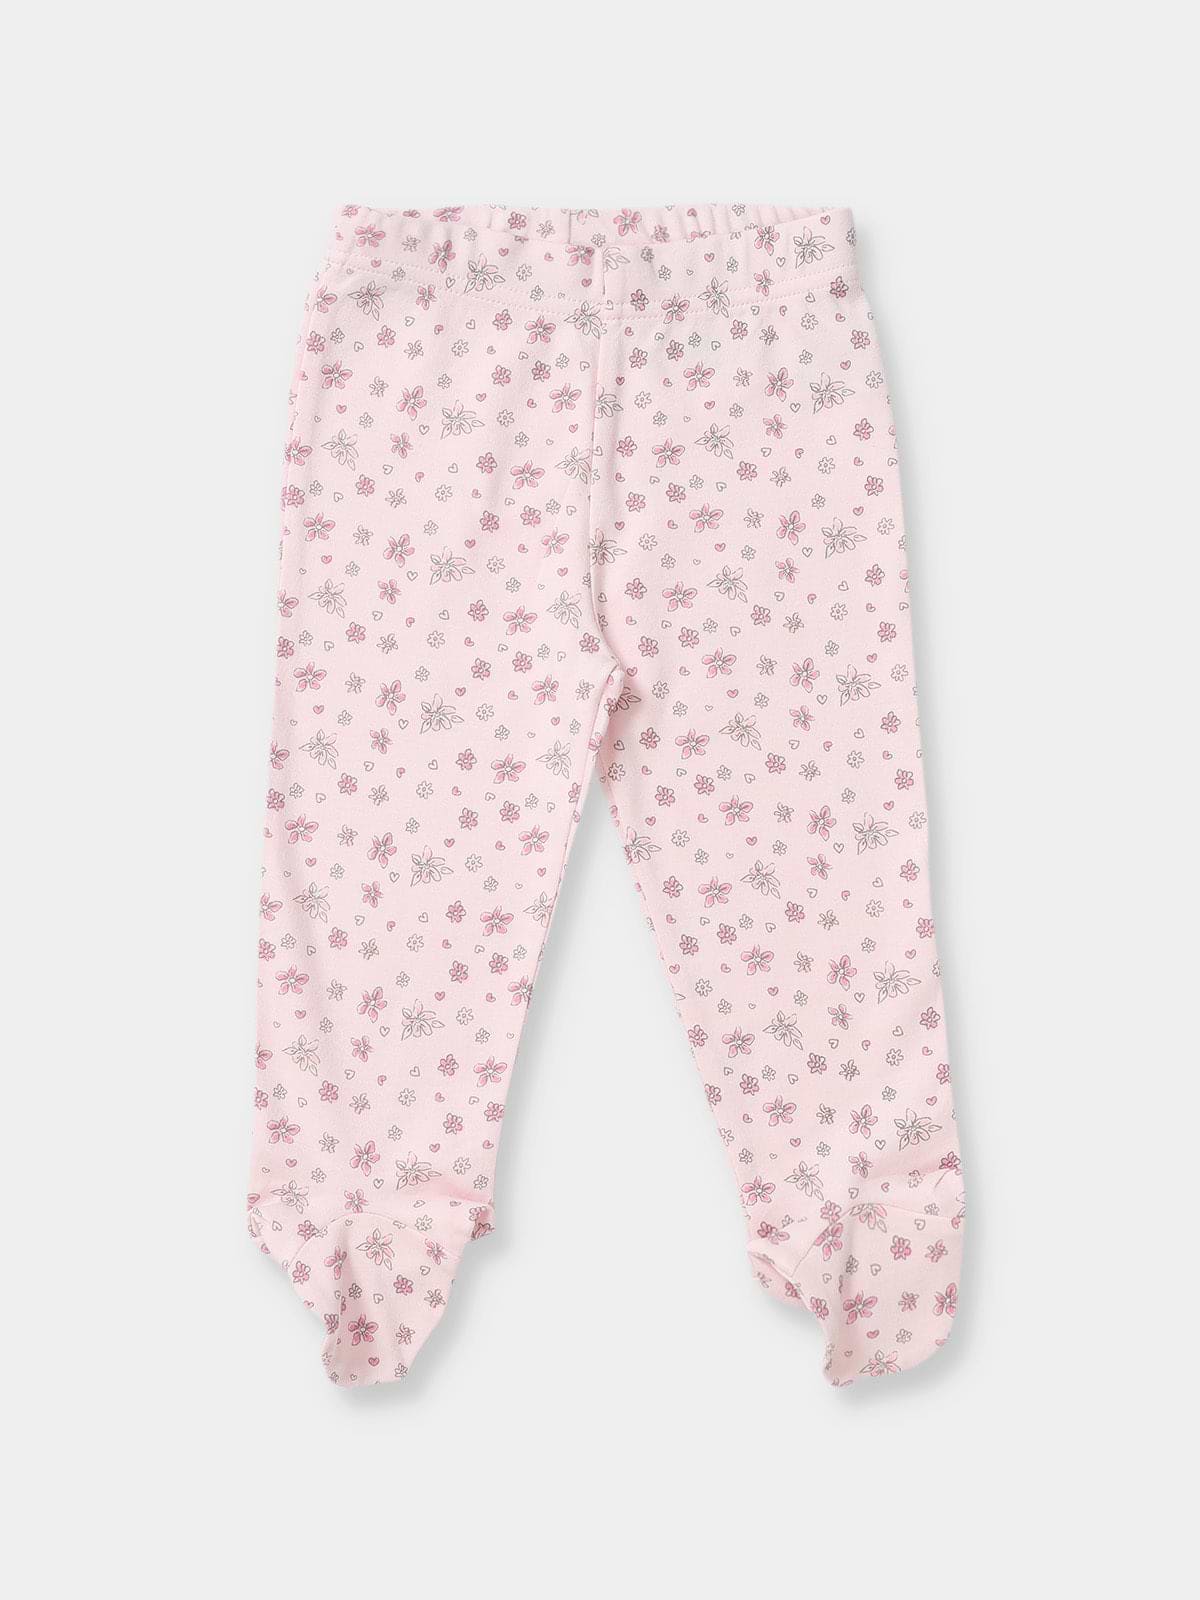 מארז 3 מכנסיים עם רגליות FLORAL BABY / תינוקות